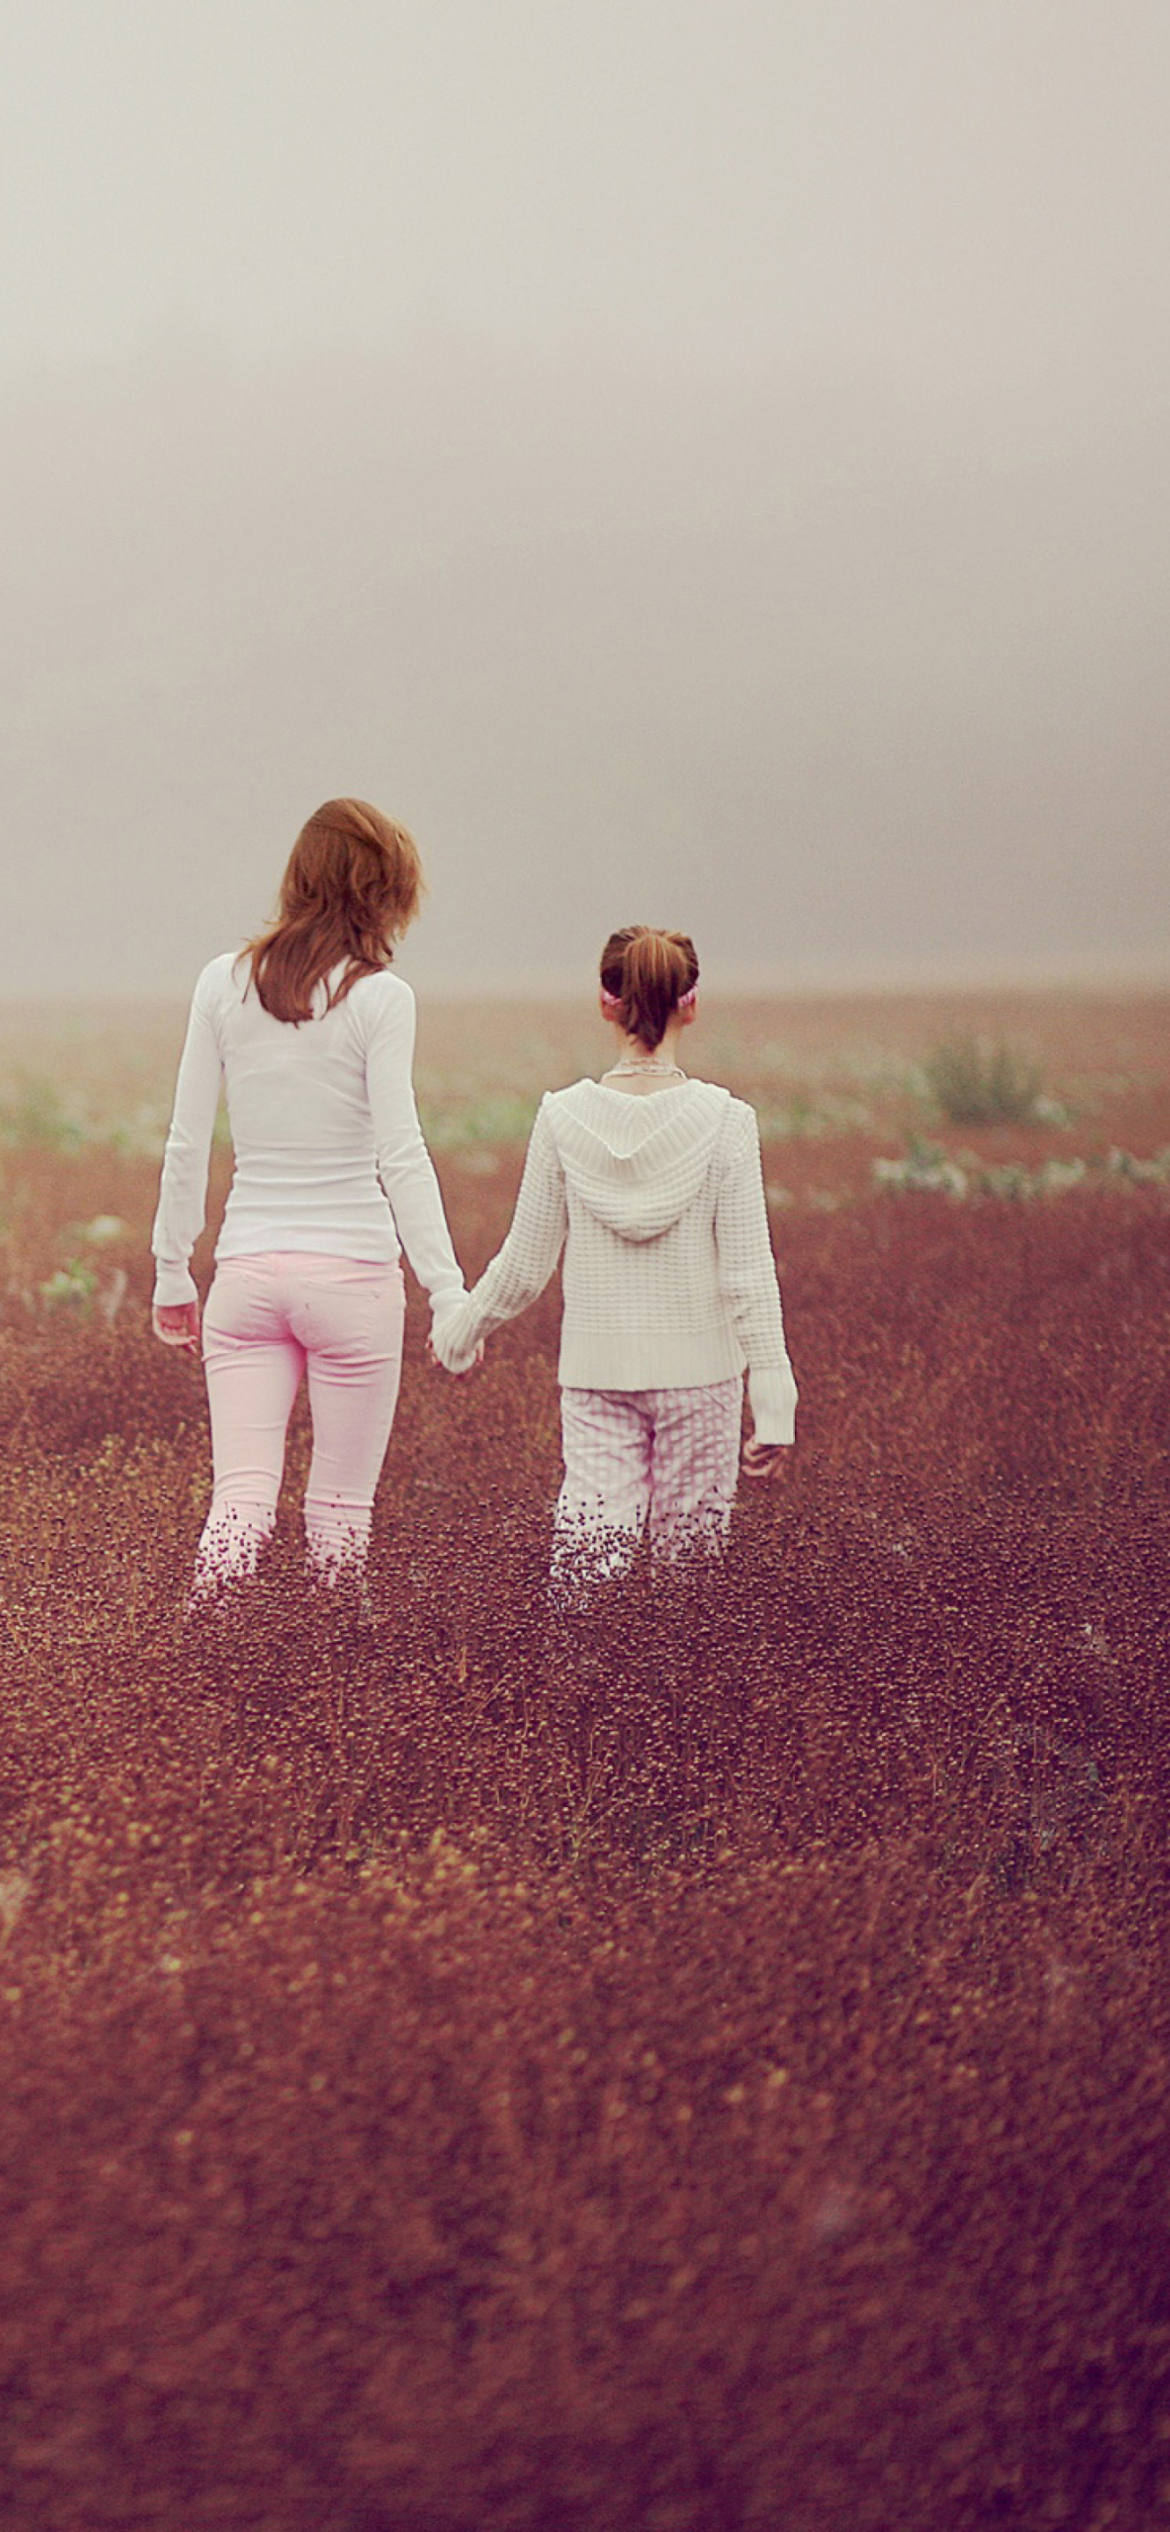 Two Girls Walking In The Field wallpaper 1170x2532